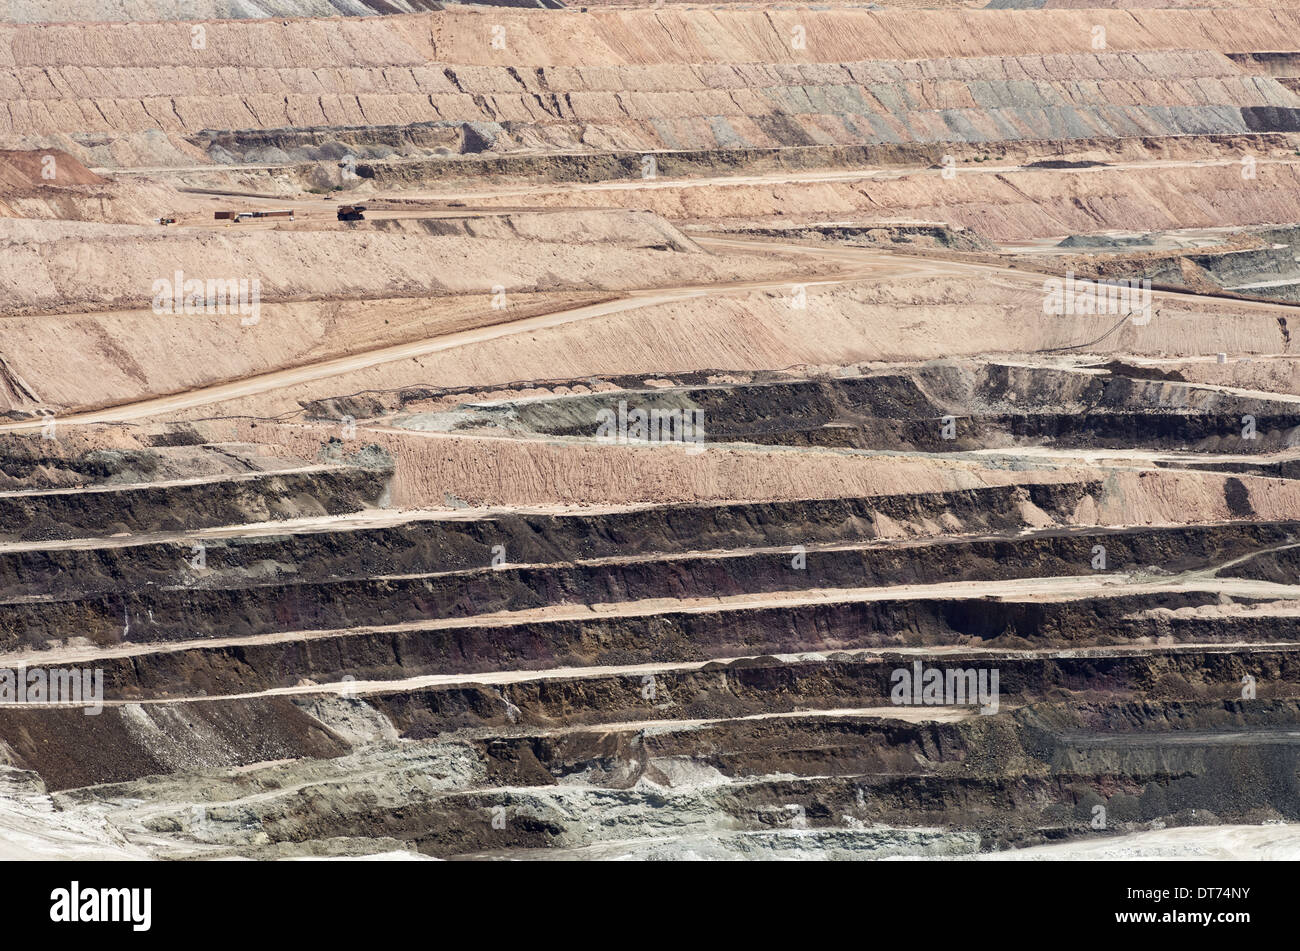 massive open pit mine for borate minerals Stock Photo